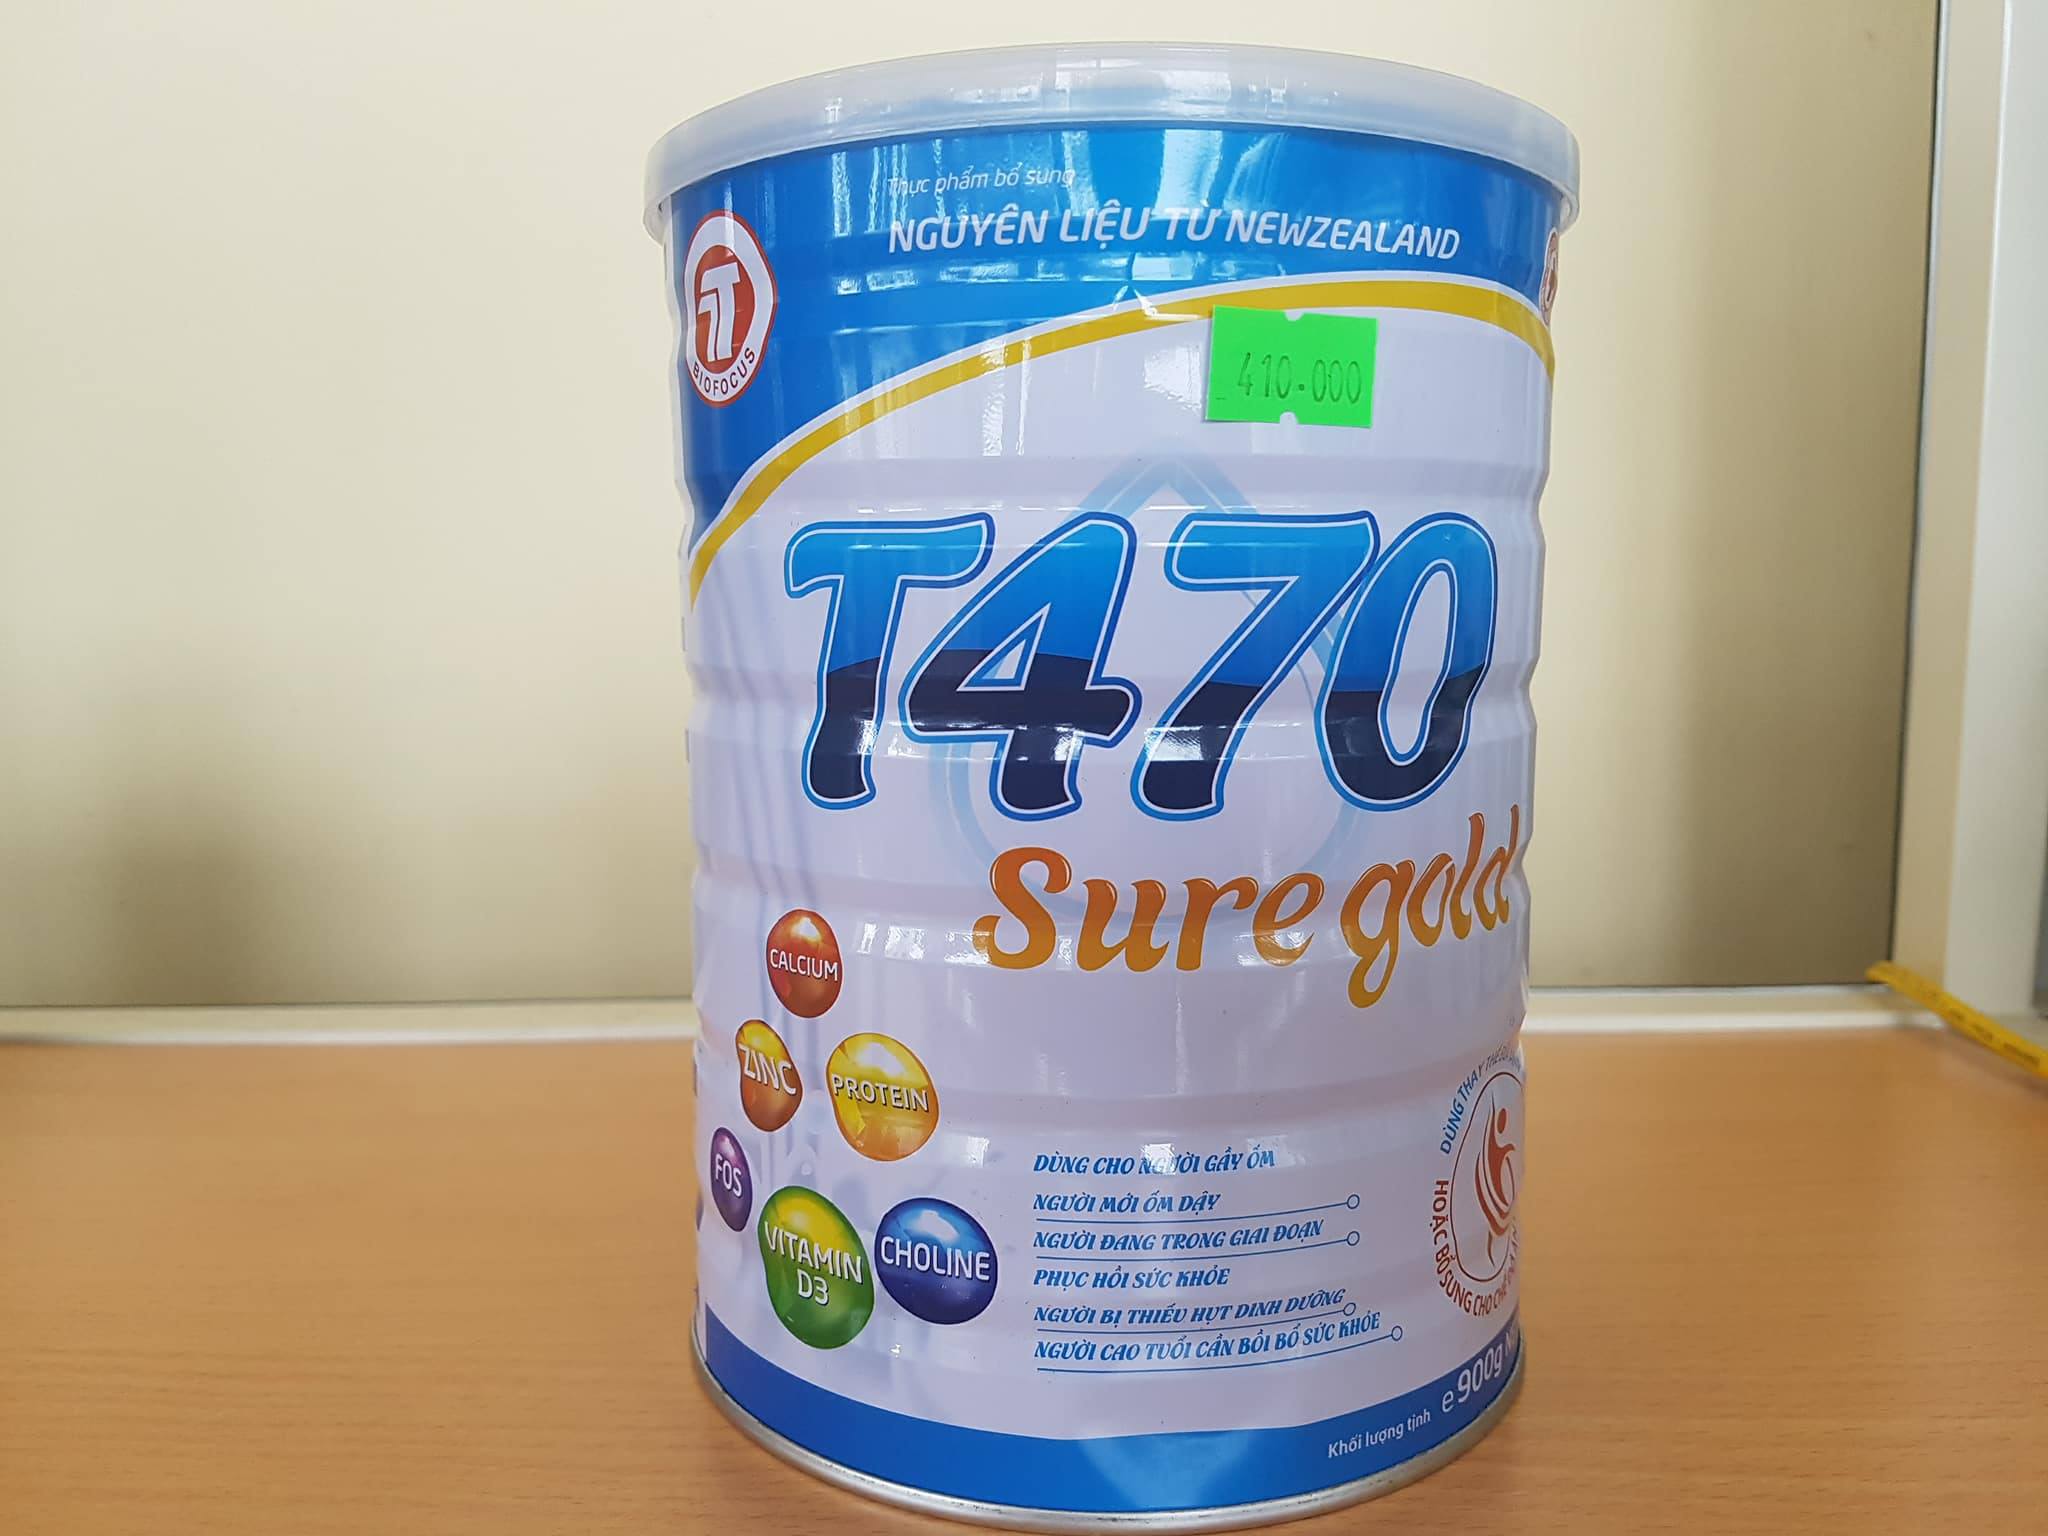 Sữa bột T470 Sure gold 900g dành cho người già, người gầy, ốm